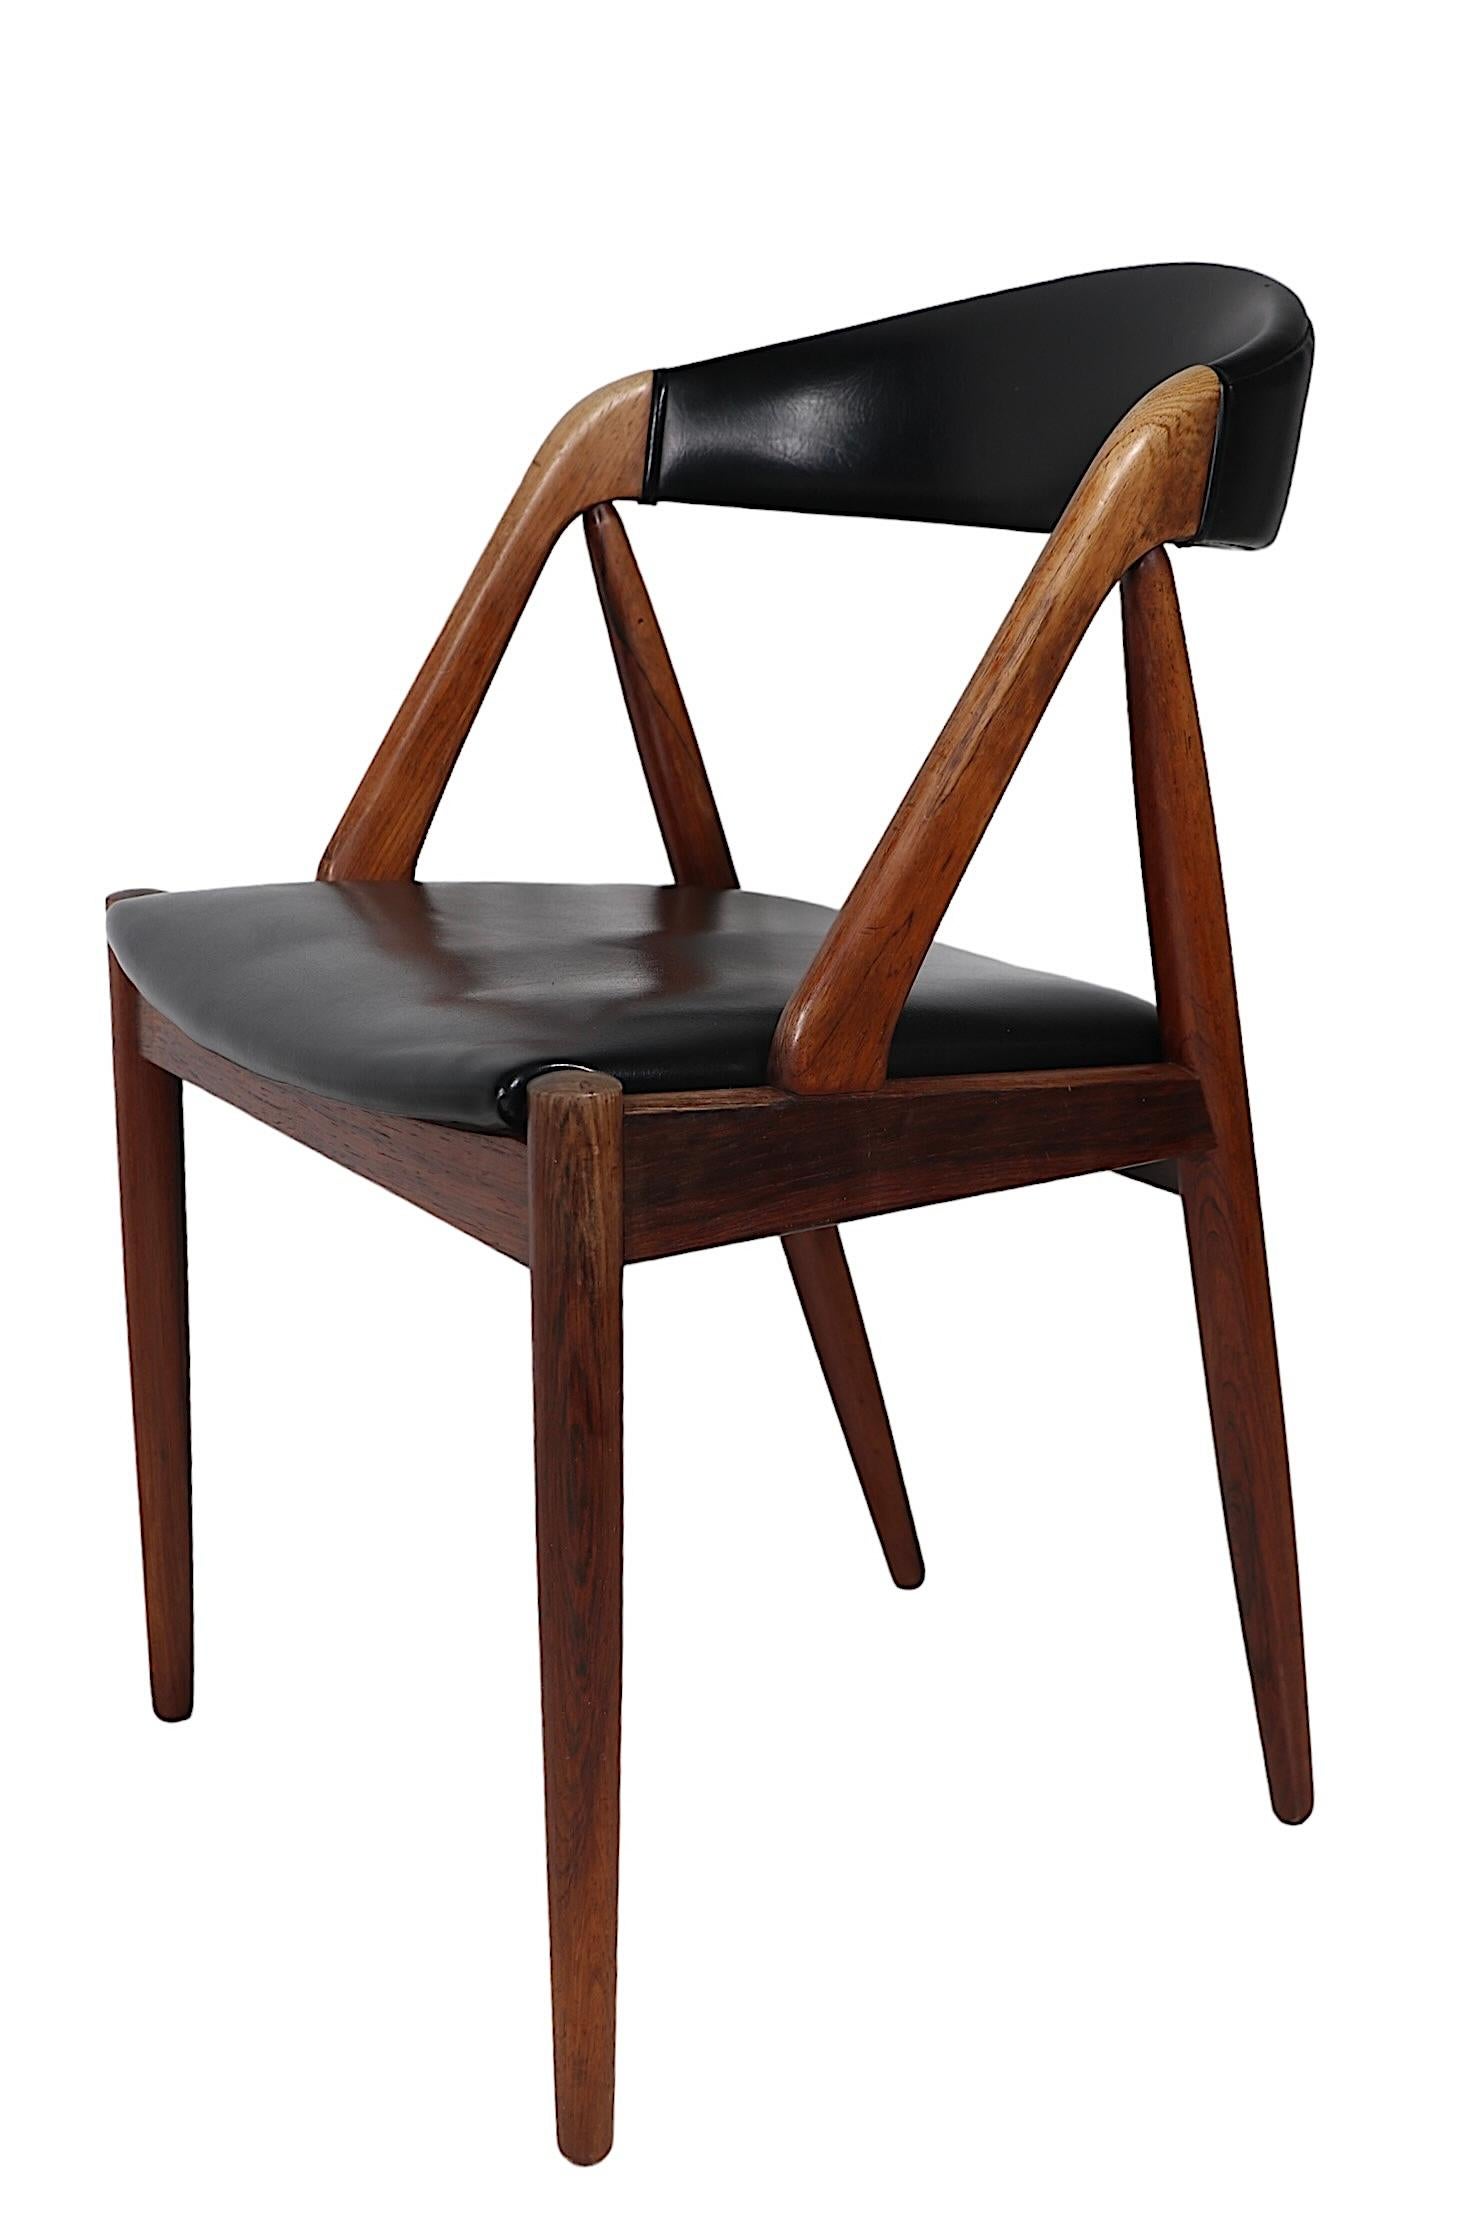 Chaises de salle à manger danoises emblématiques de la modernité du milieu du siècle, conçues par Kai Kristiansen, fabriquées au Danemark par Shou Andersen Mobelfabrik, vers les années 1960. Les chaises présentent les caractéristiques suivantes  Des